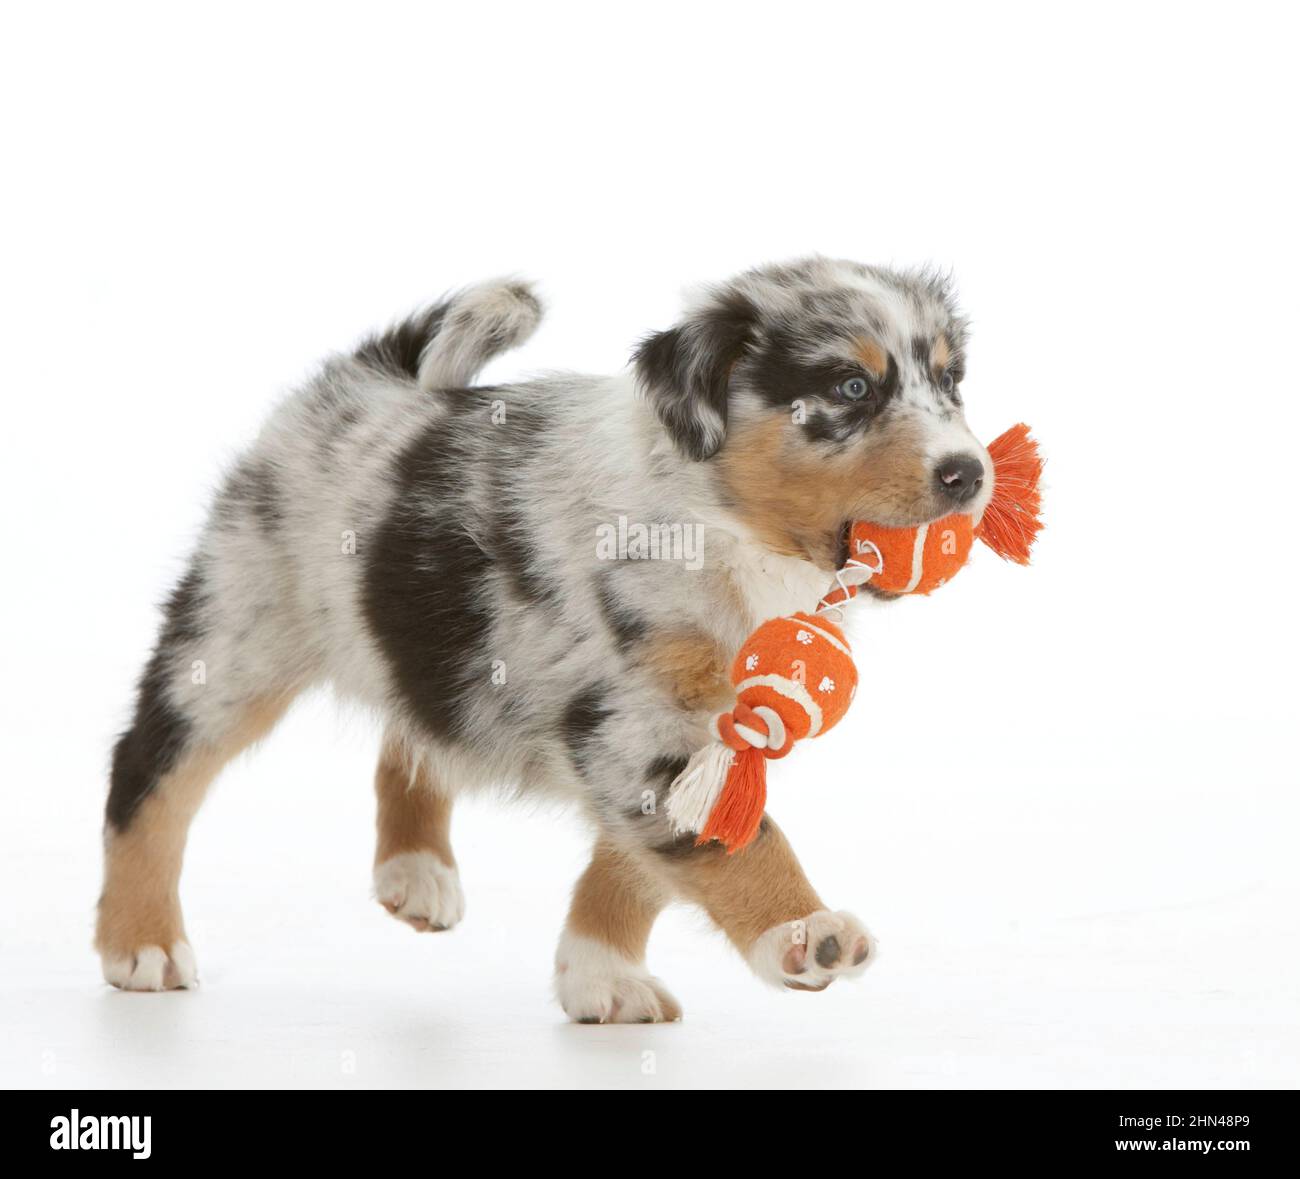 Pastore Australiano. Un cucciolo che porta un giocattolo. Foto studio su sfondo bianco. Germania Foto Stock